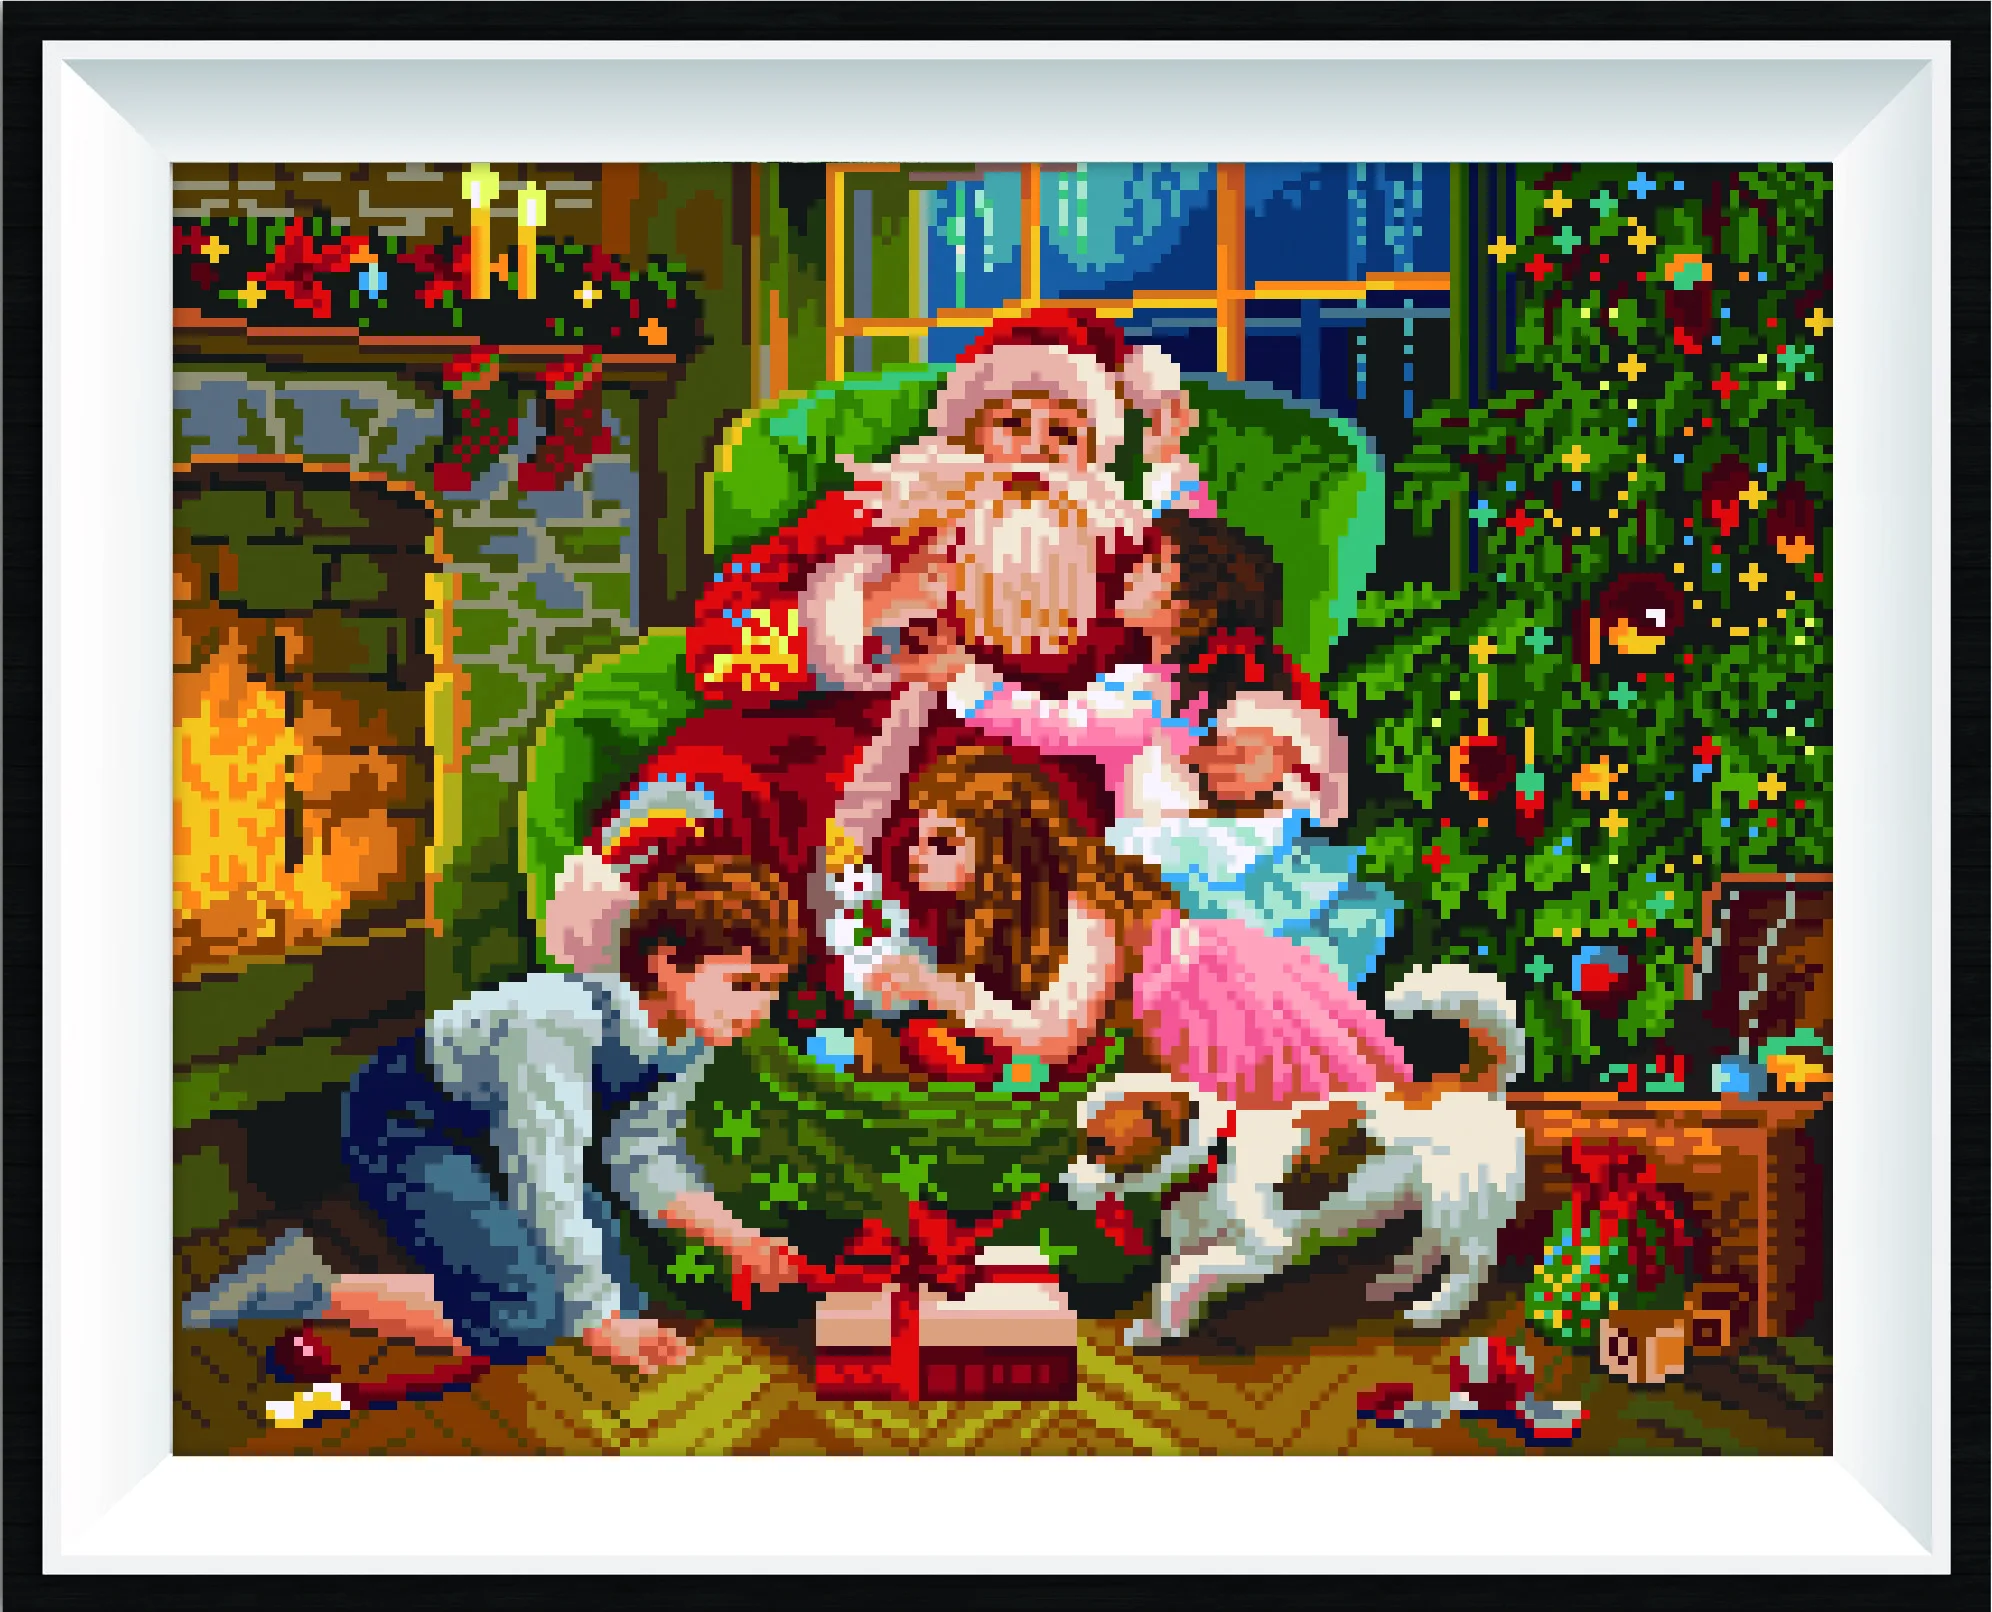 

Алмазов картина Санта Клаус и ребенка 5D Рождество вышивка DIY Полный Круглый некоторые AB дрель мозаика высокого качества набор со стразами